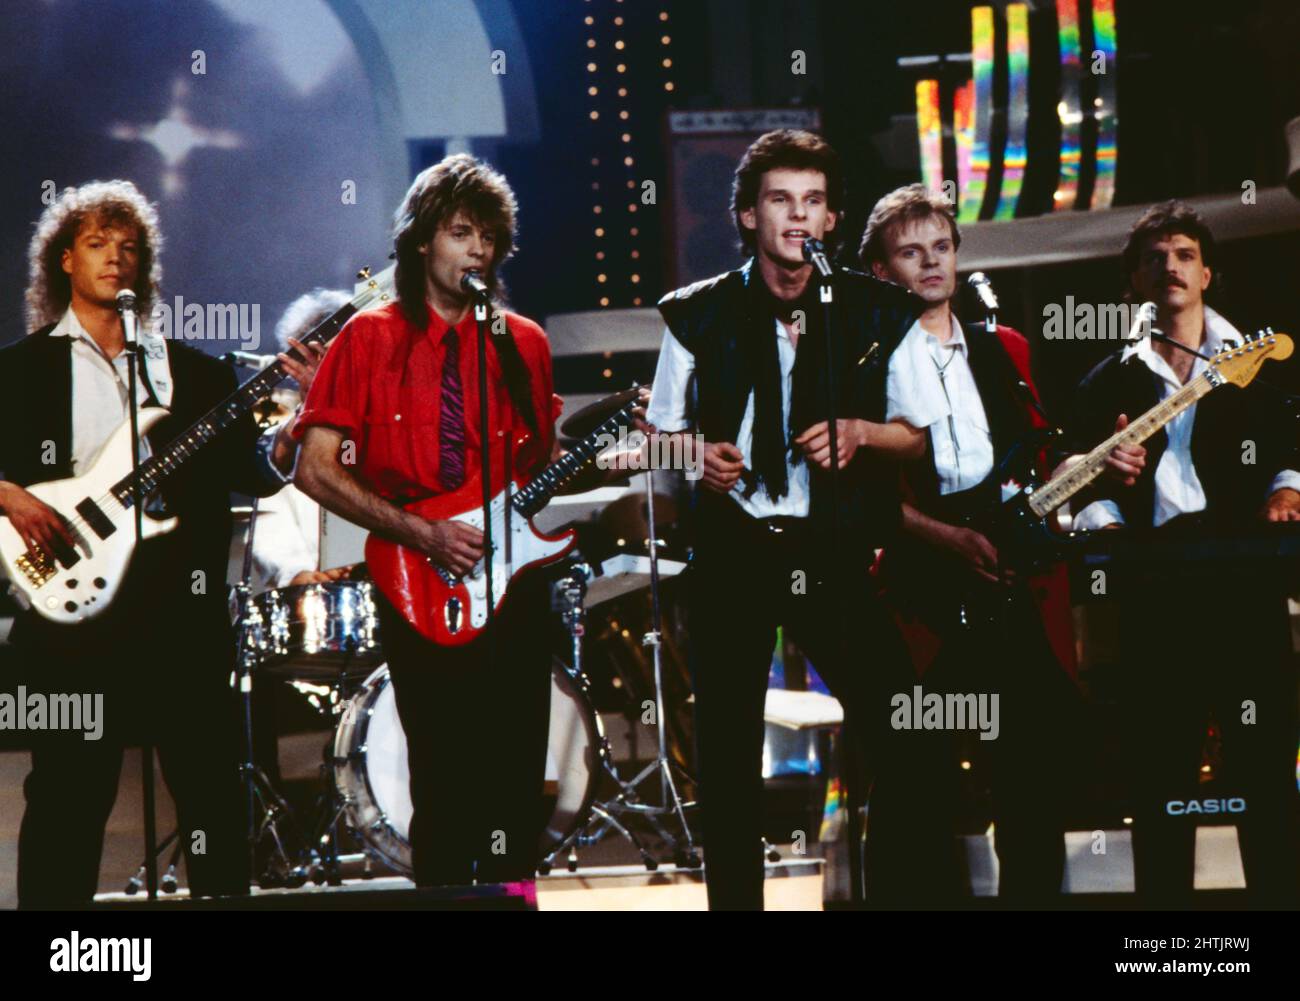 Corey Hart, kanadischer Pop- und Rocksänger, mit Band bei einem Auftritt in Deutschland, um 1987. Stock Photo